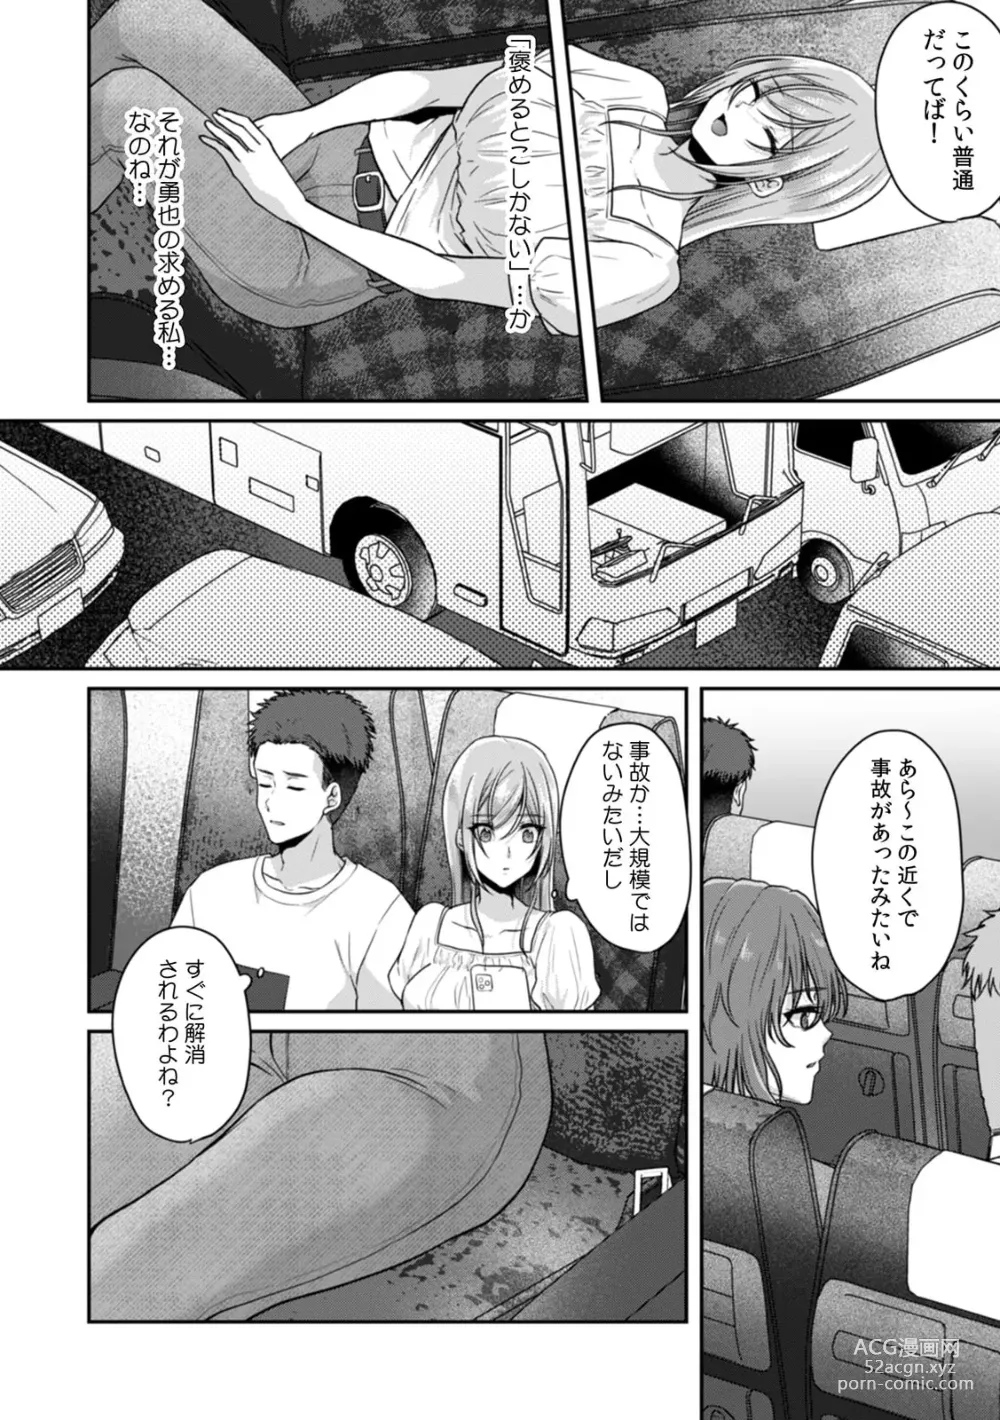 Page 10 of manga Manin Densha de Shikkin Sunzen!? Chikan Danshi no Ijiwaru na Yubi de Ikasare Tsuzuketa OL 11-13